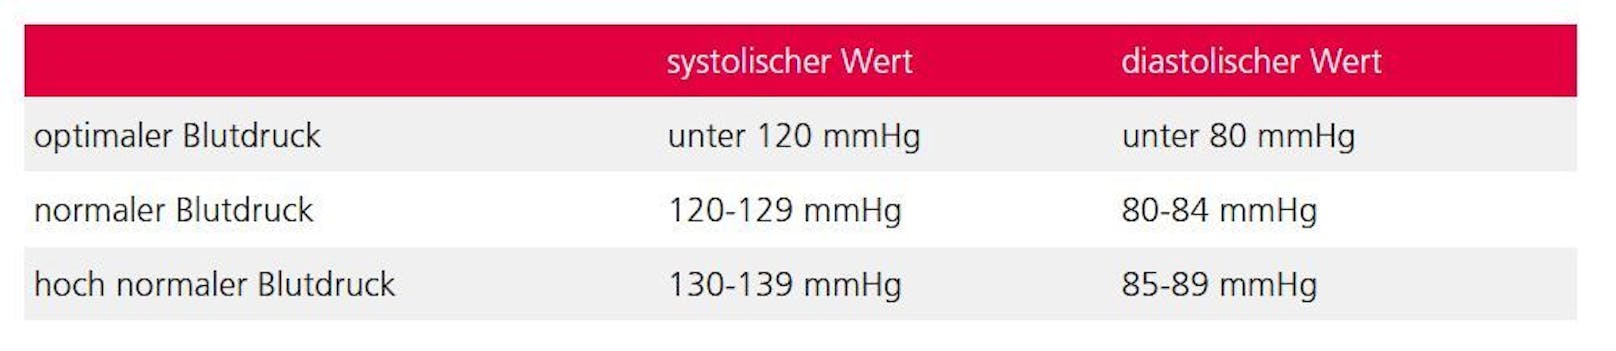 Die Kategorisierung des Blutdrucks laut Schweizerischer Herzstiftung. <br>